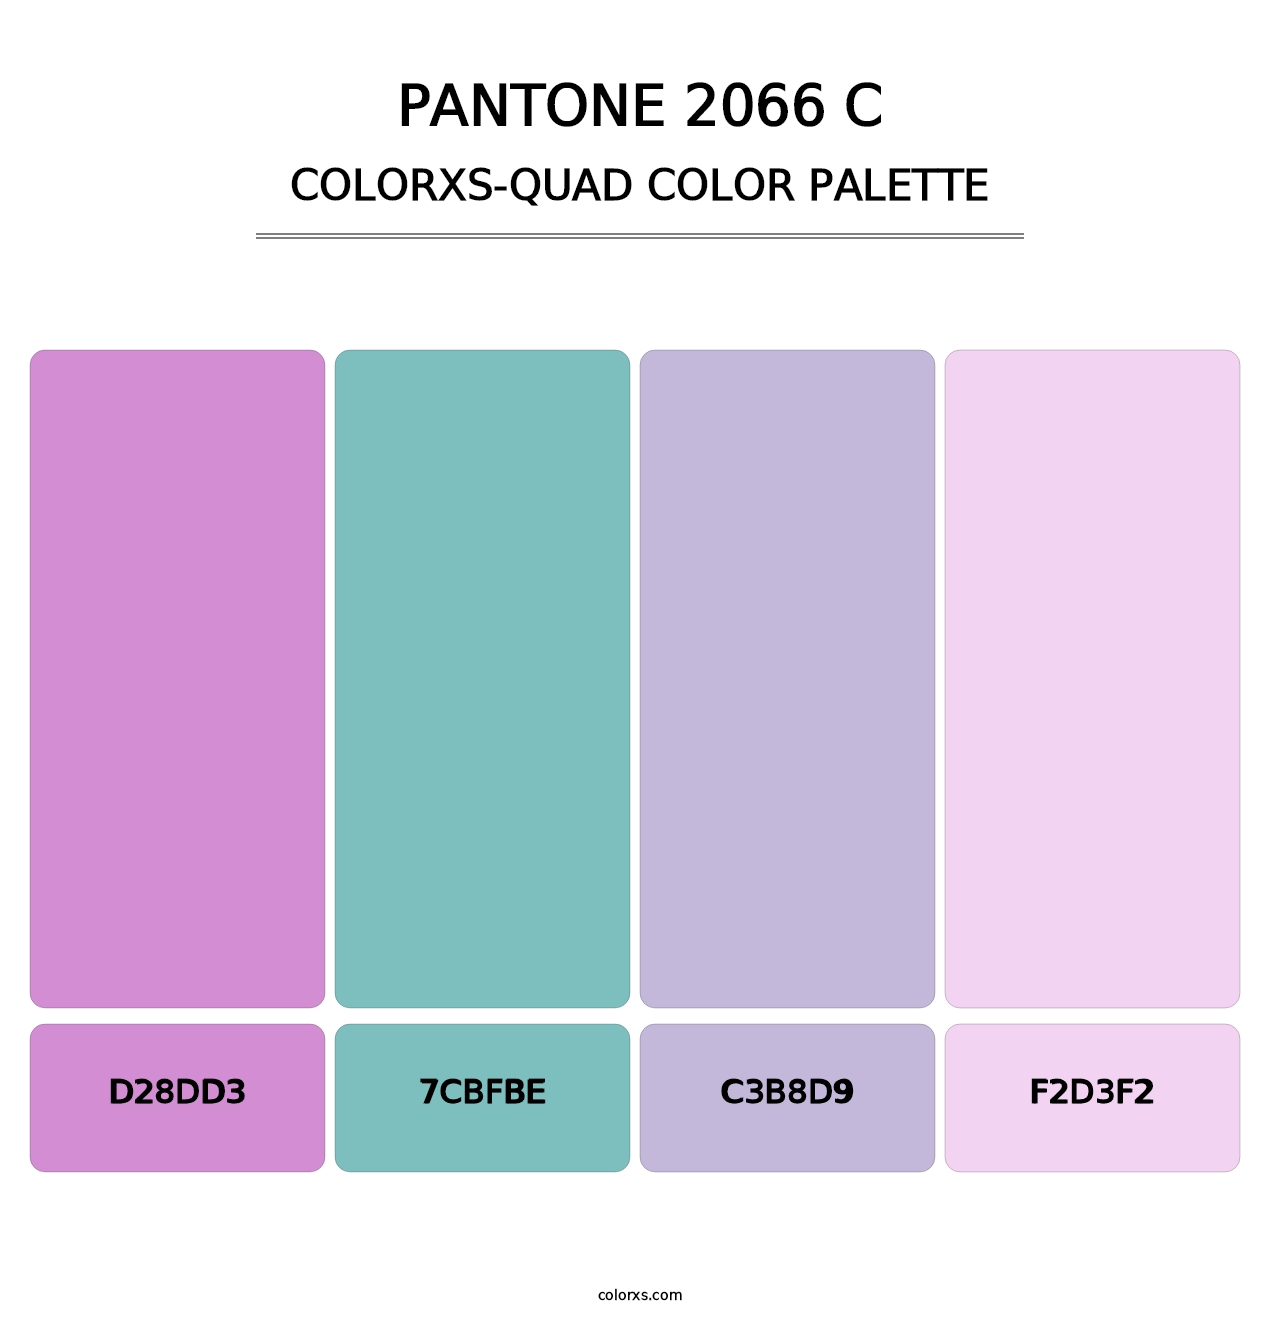 PANTONE 2066 C - Colorxs Quad Palette